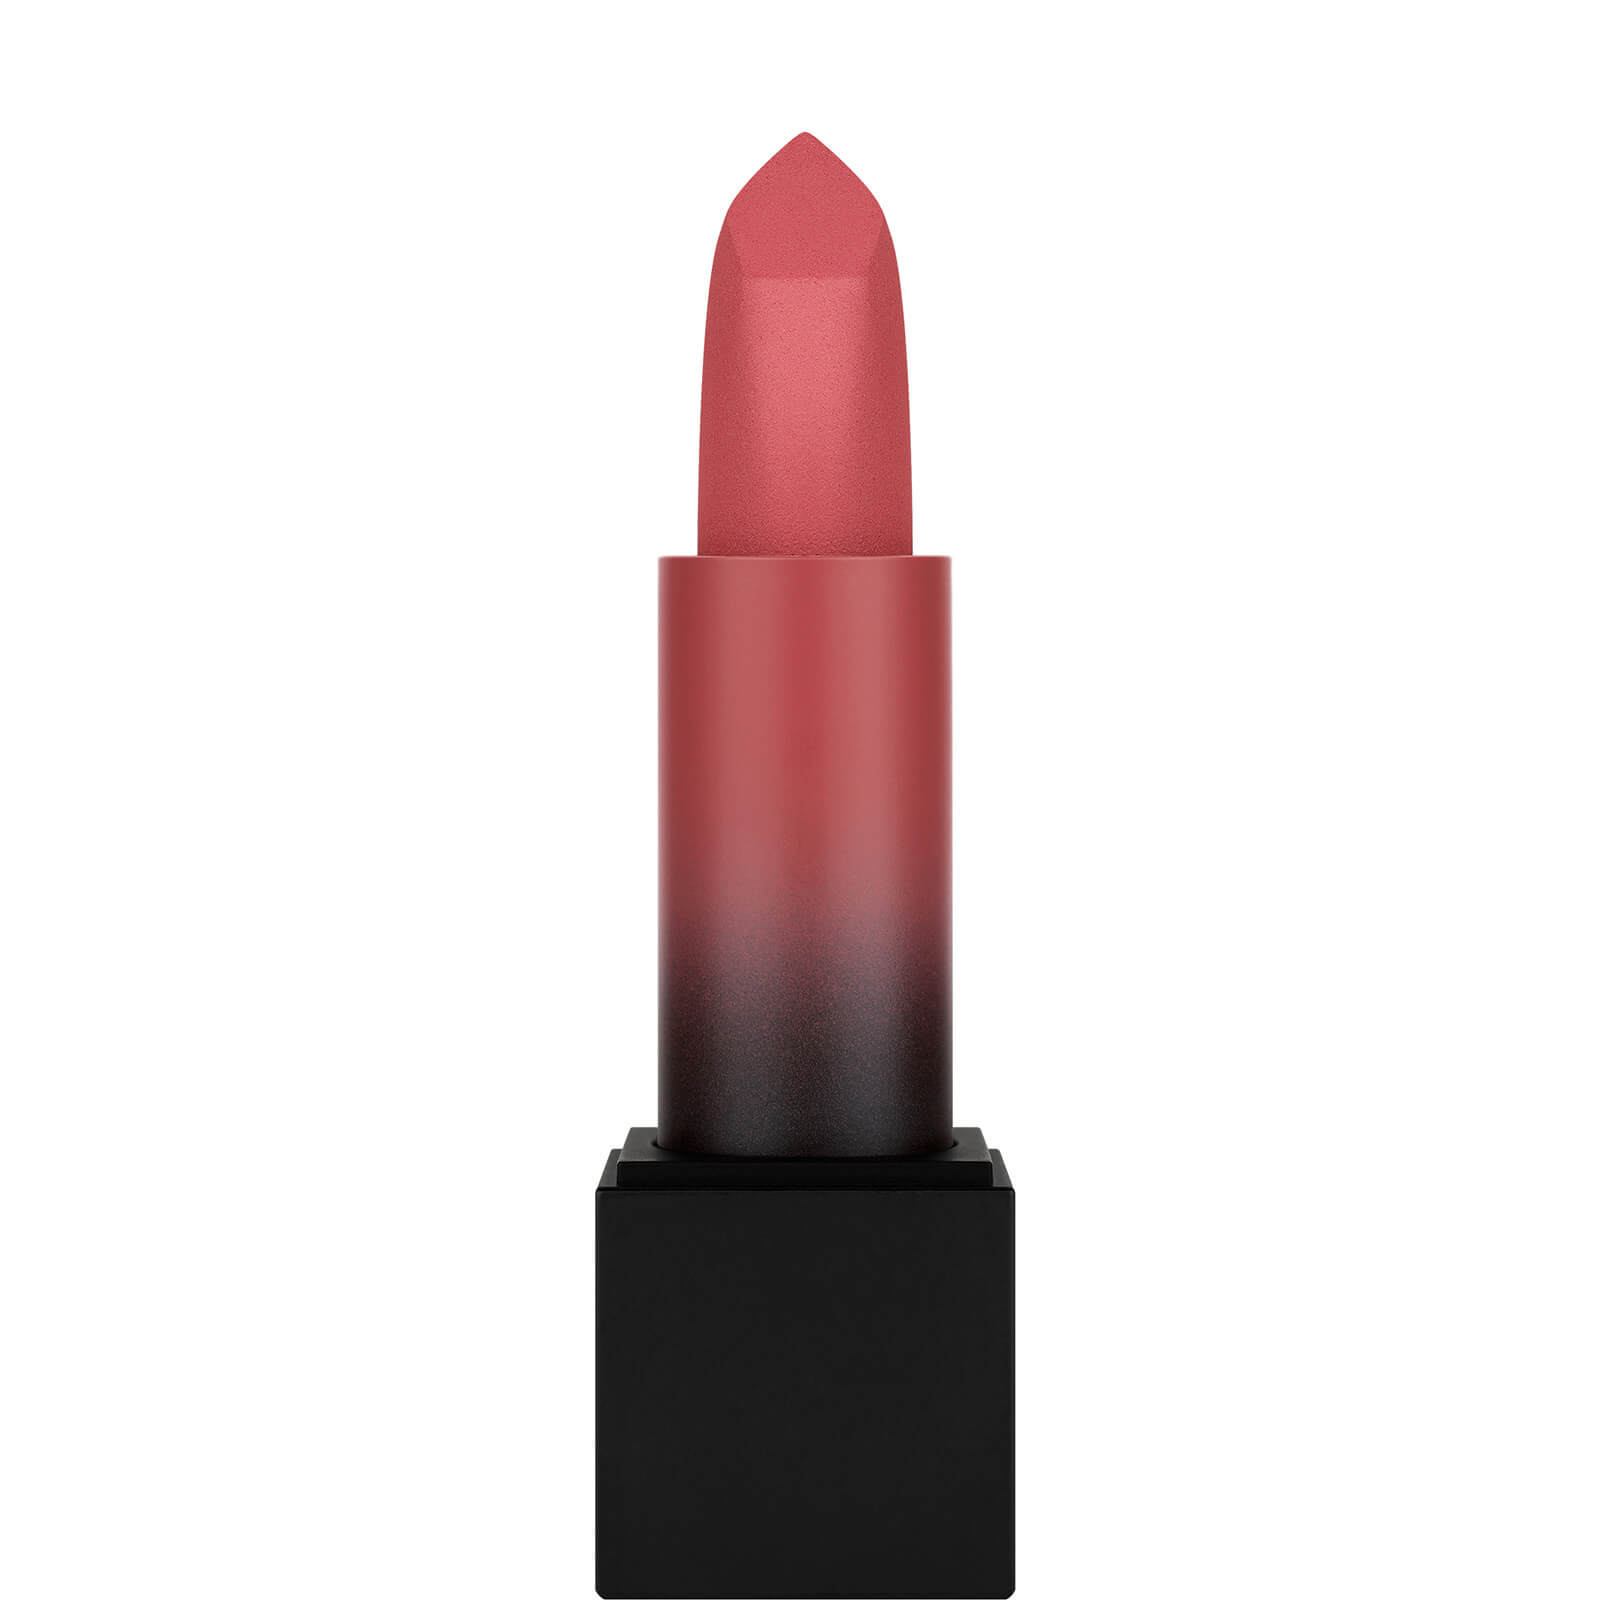 Photos - Lipstick & Lip Gloss Huda Beauty Power Bullet Matte Lipstick - Honeymoon 